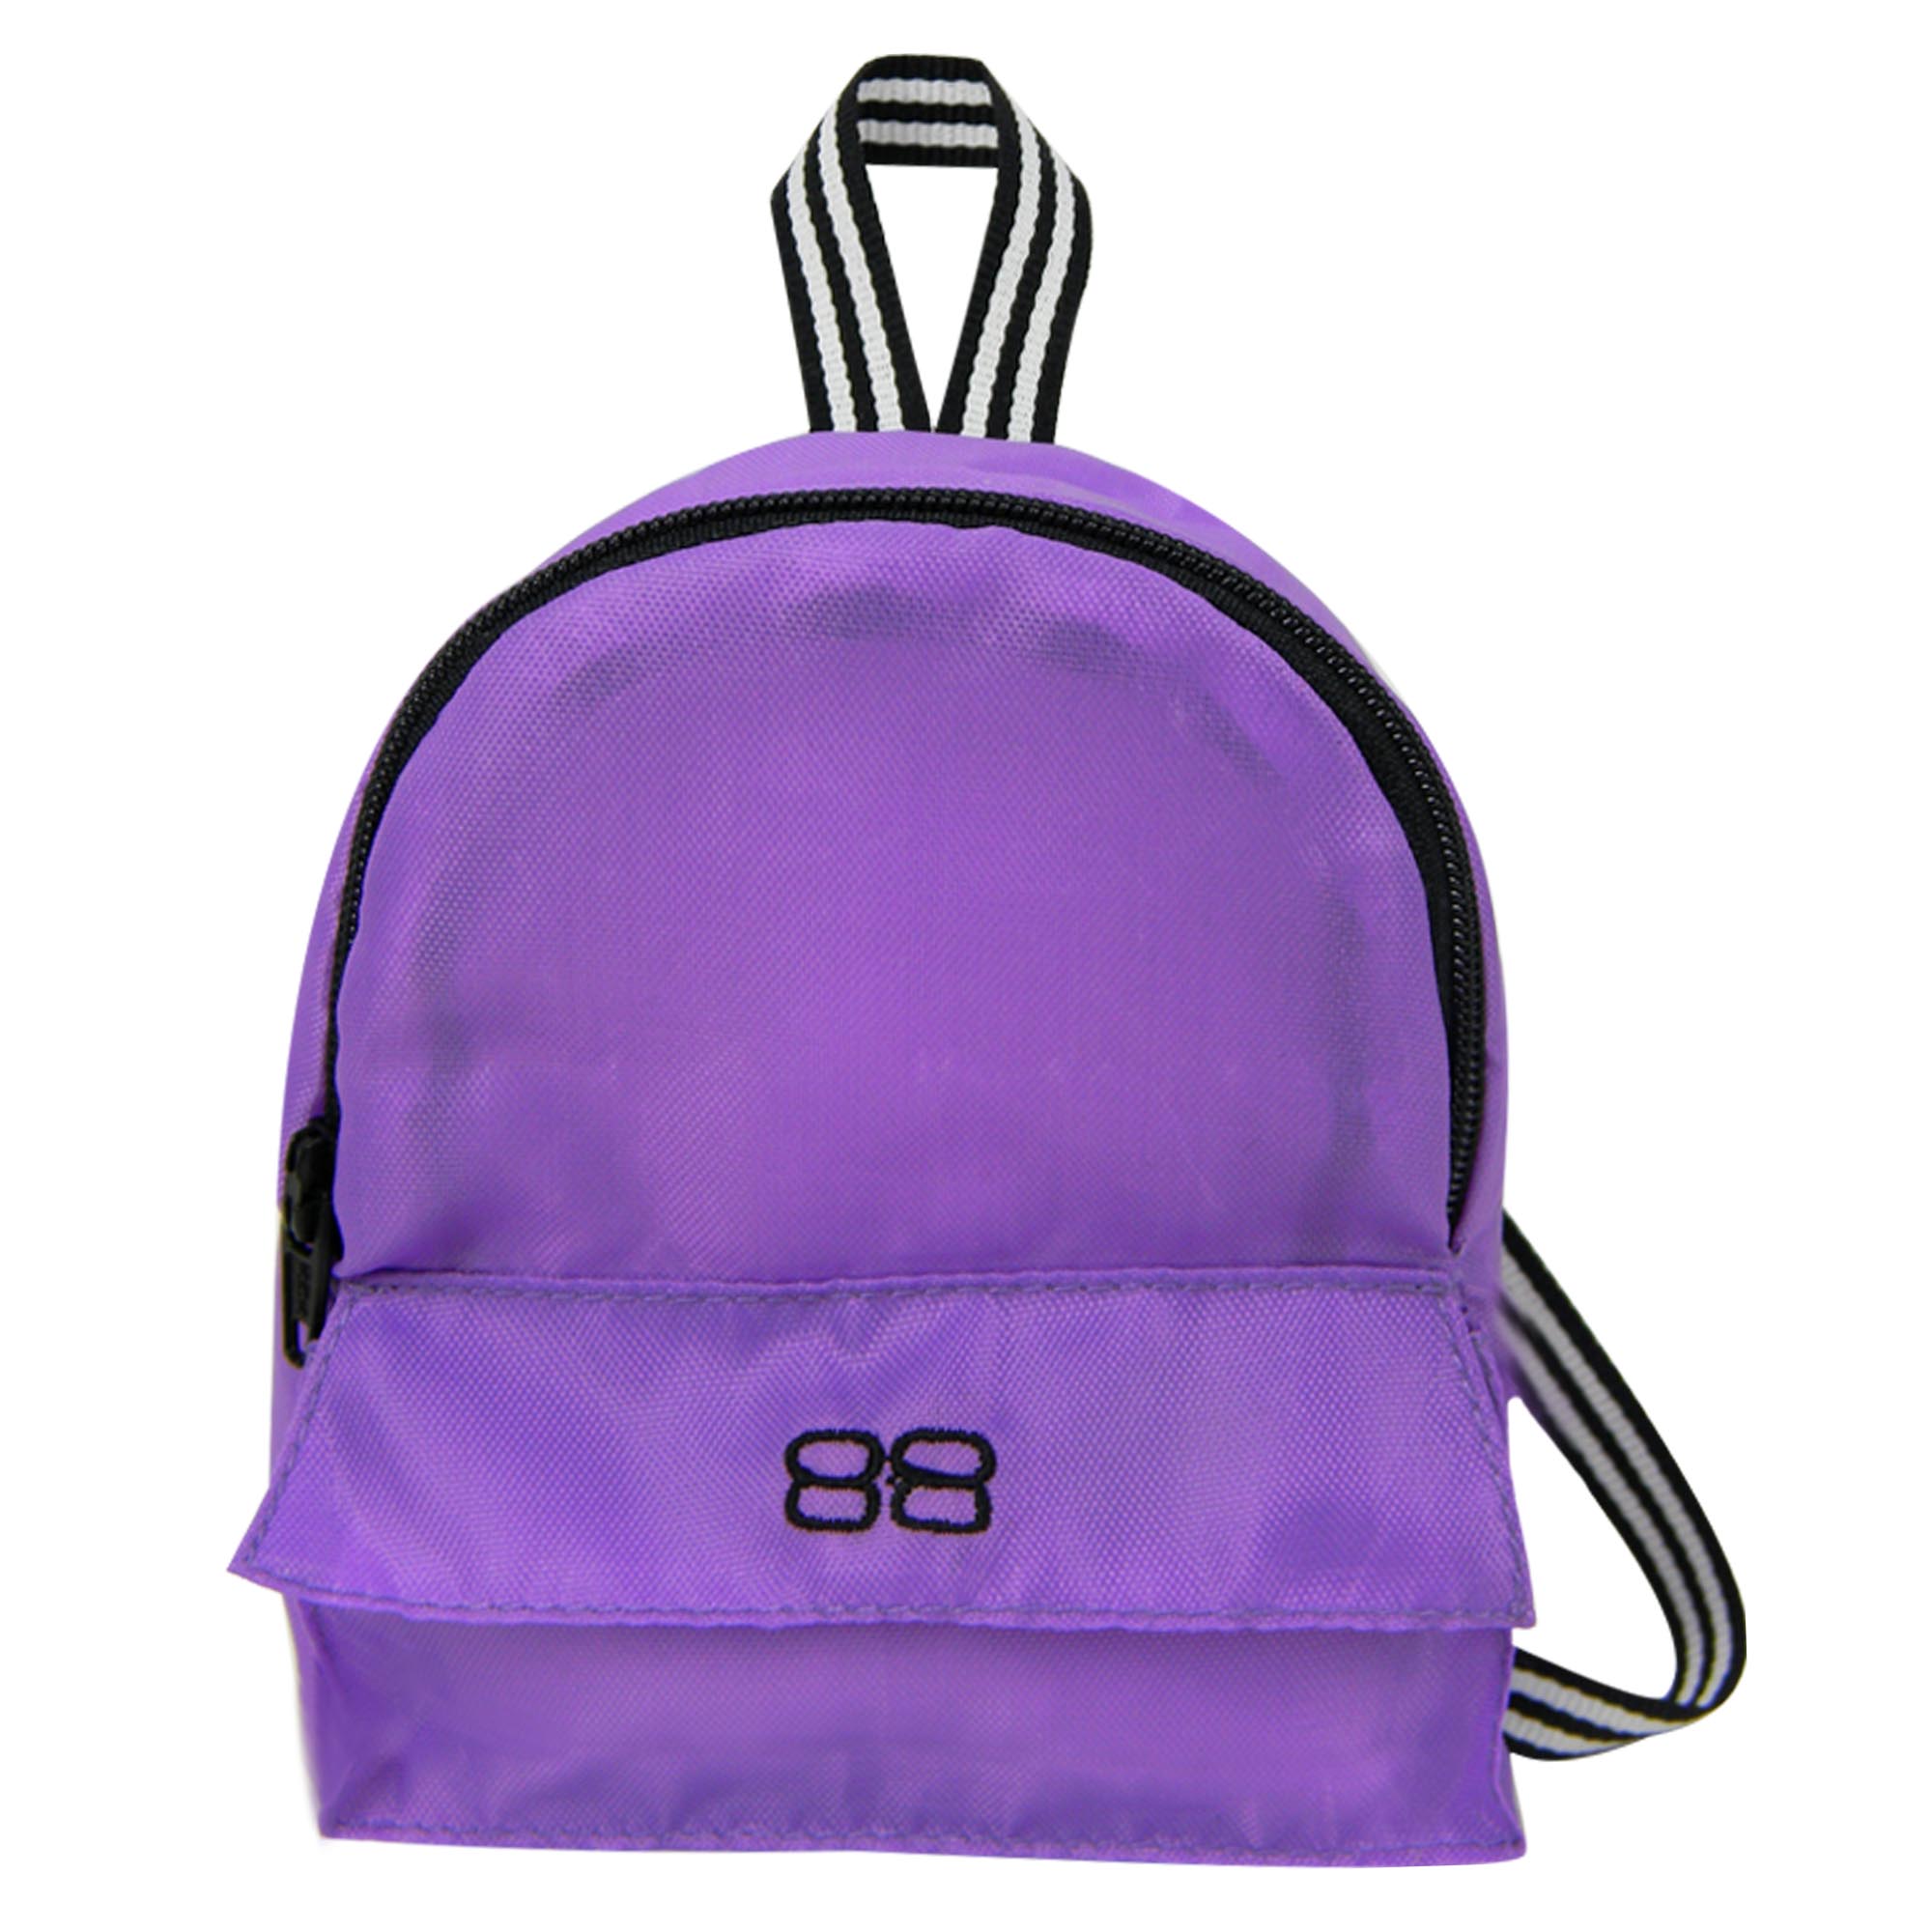 Sophia's Nylon Backpack for 18" Dolls, Purple